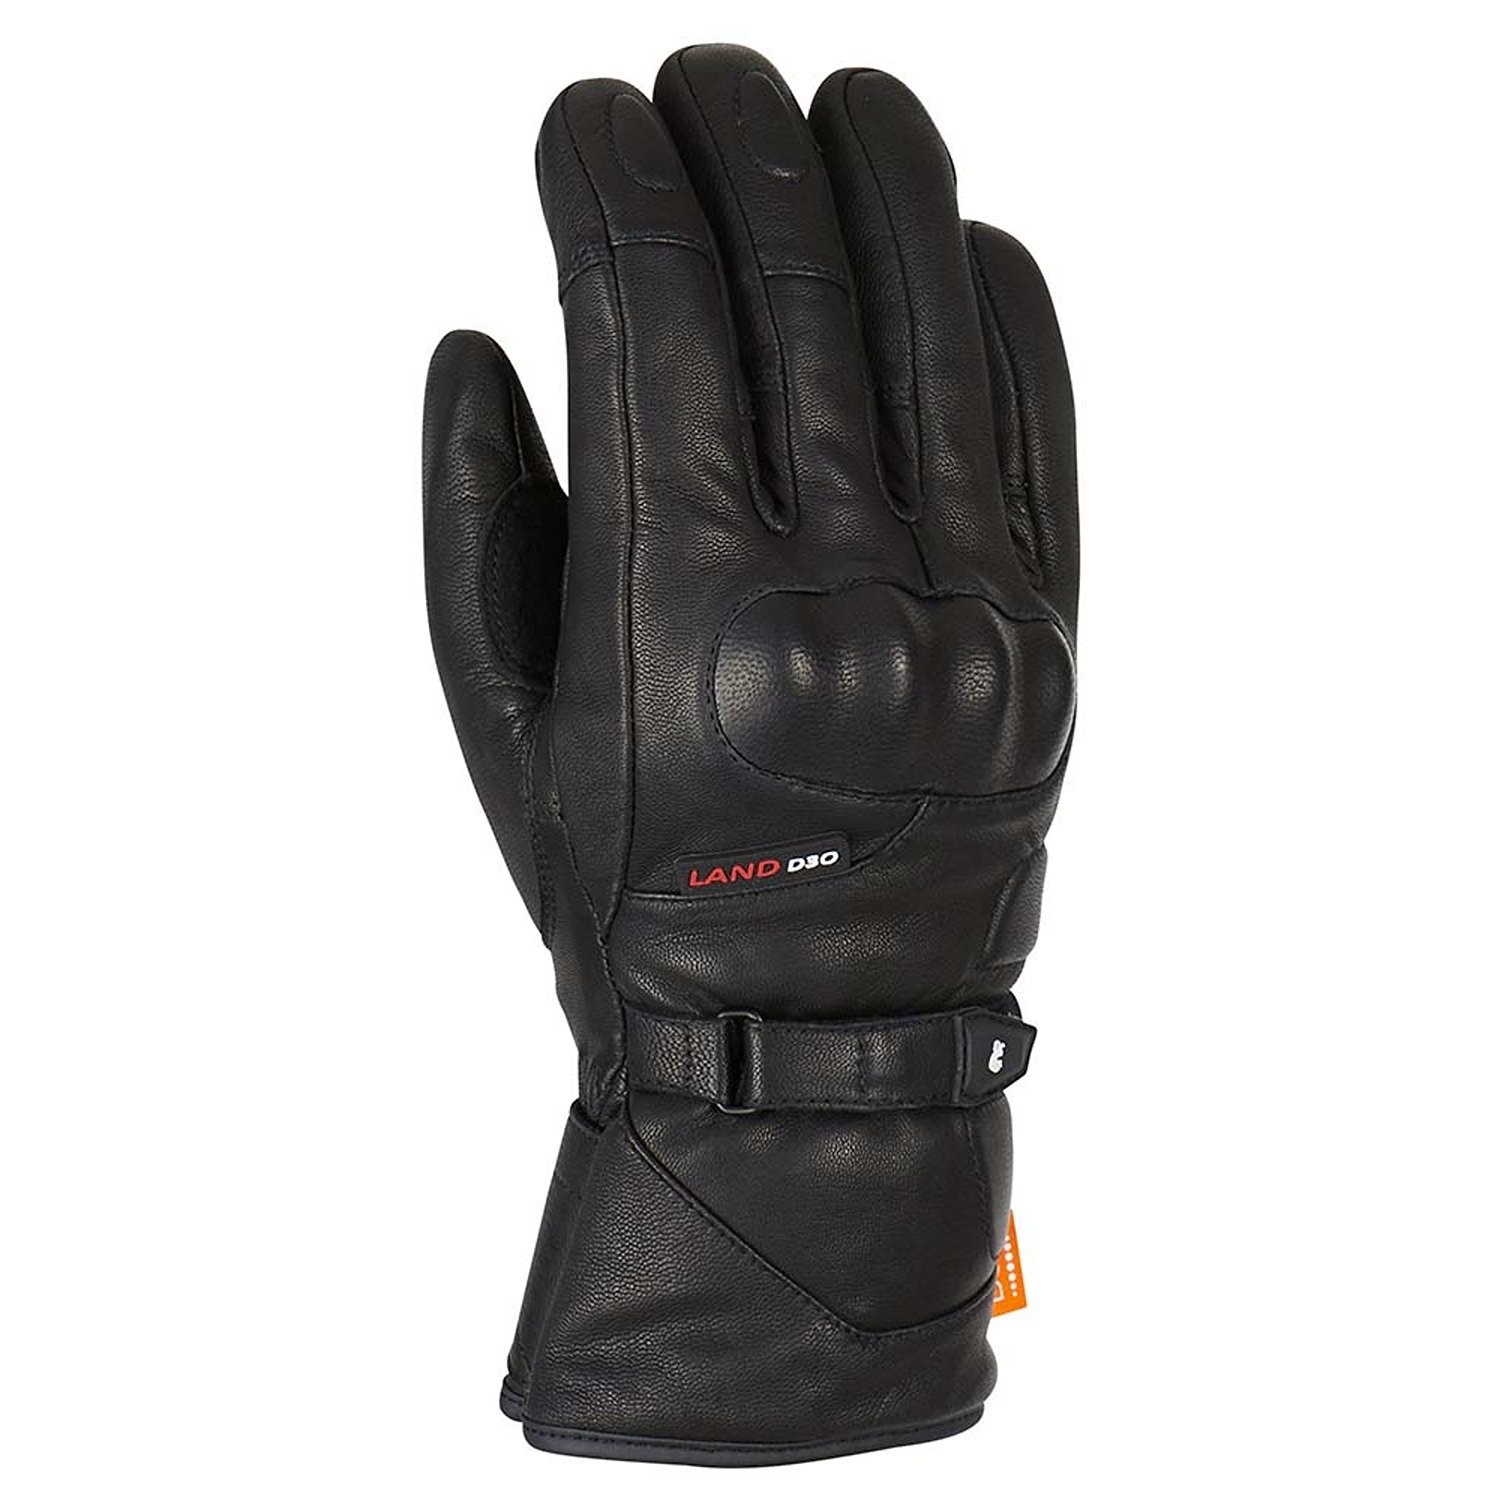 Image of Furygan Land DK D30 Gloves Black Taille 3XL